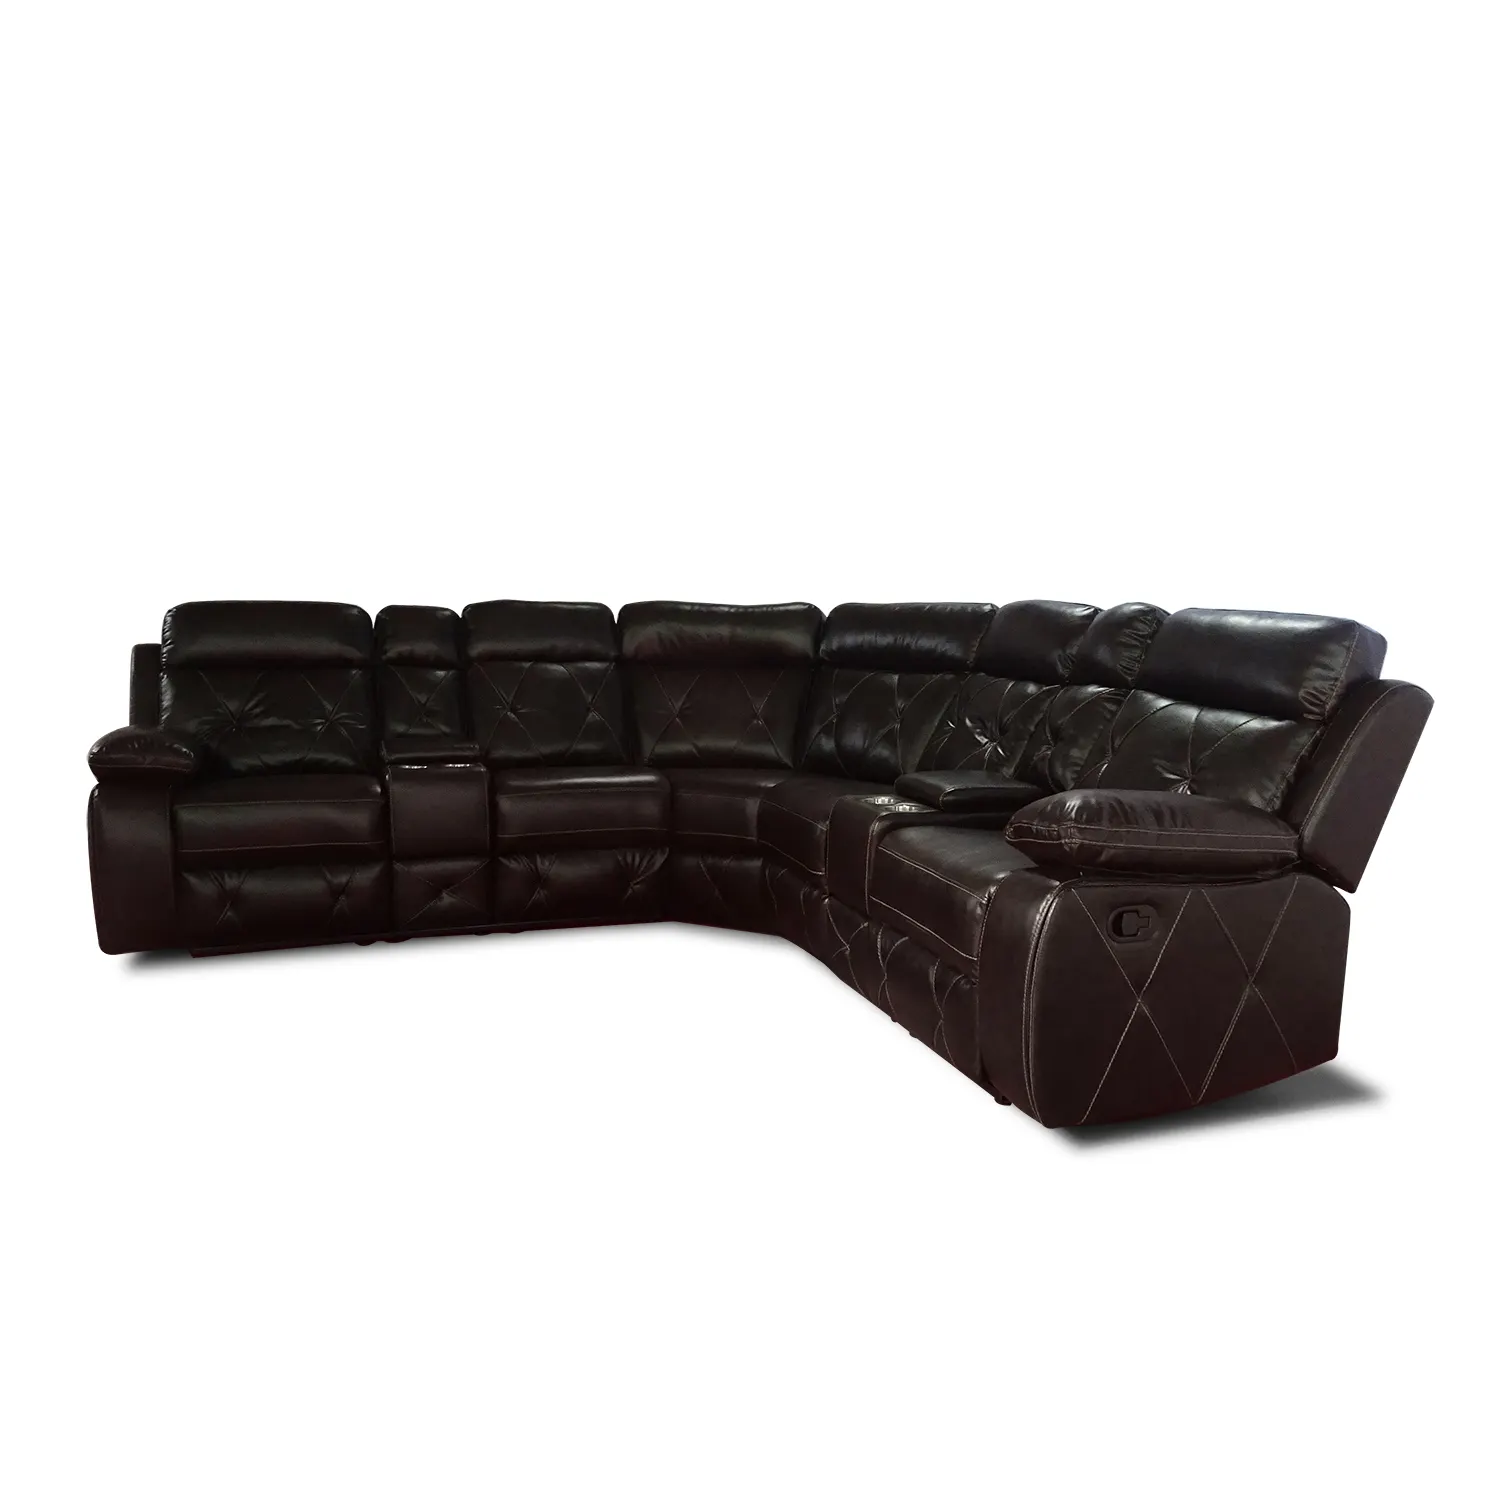 Conjunto de muebles de estilo nórdico moderno para sala de estar, sofá esquinero de cuero de diseño, sofá de lujo en forma de U